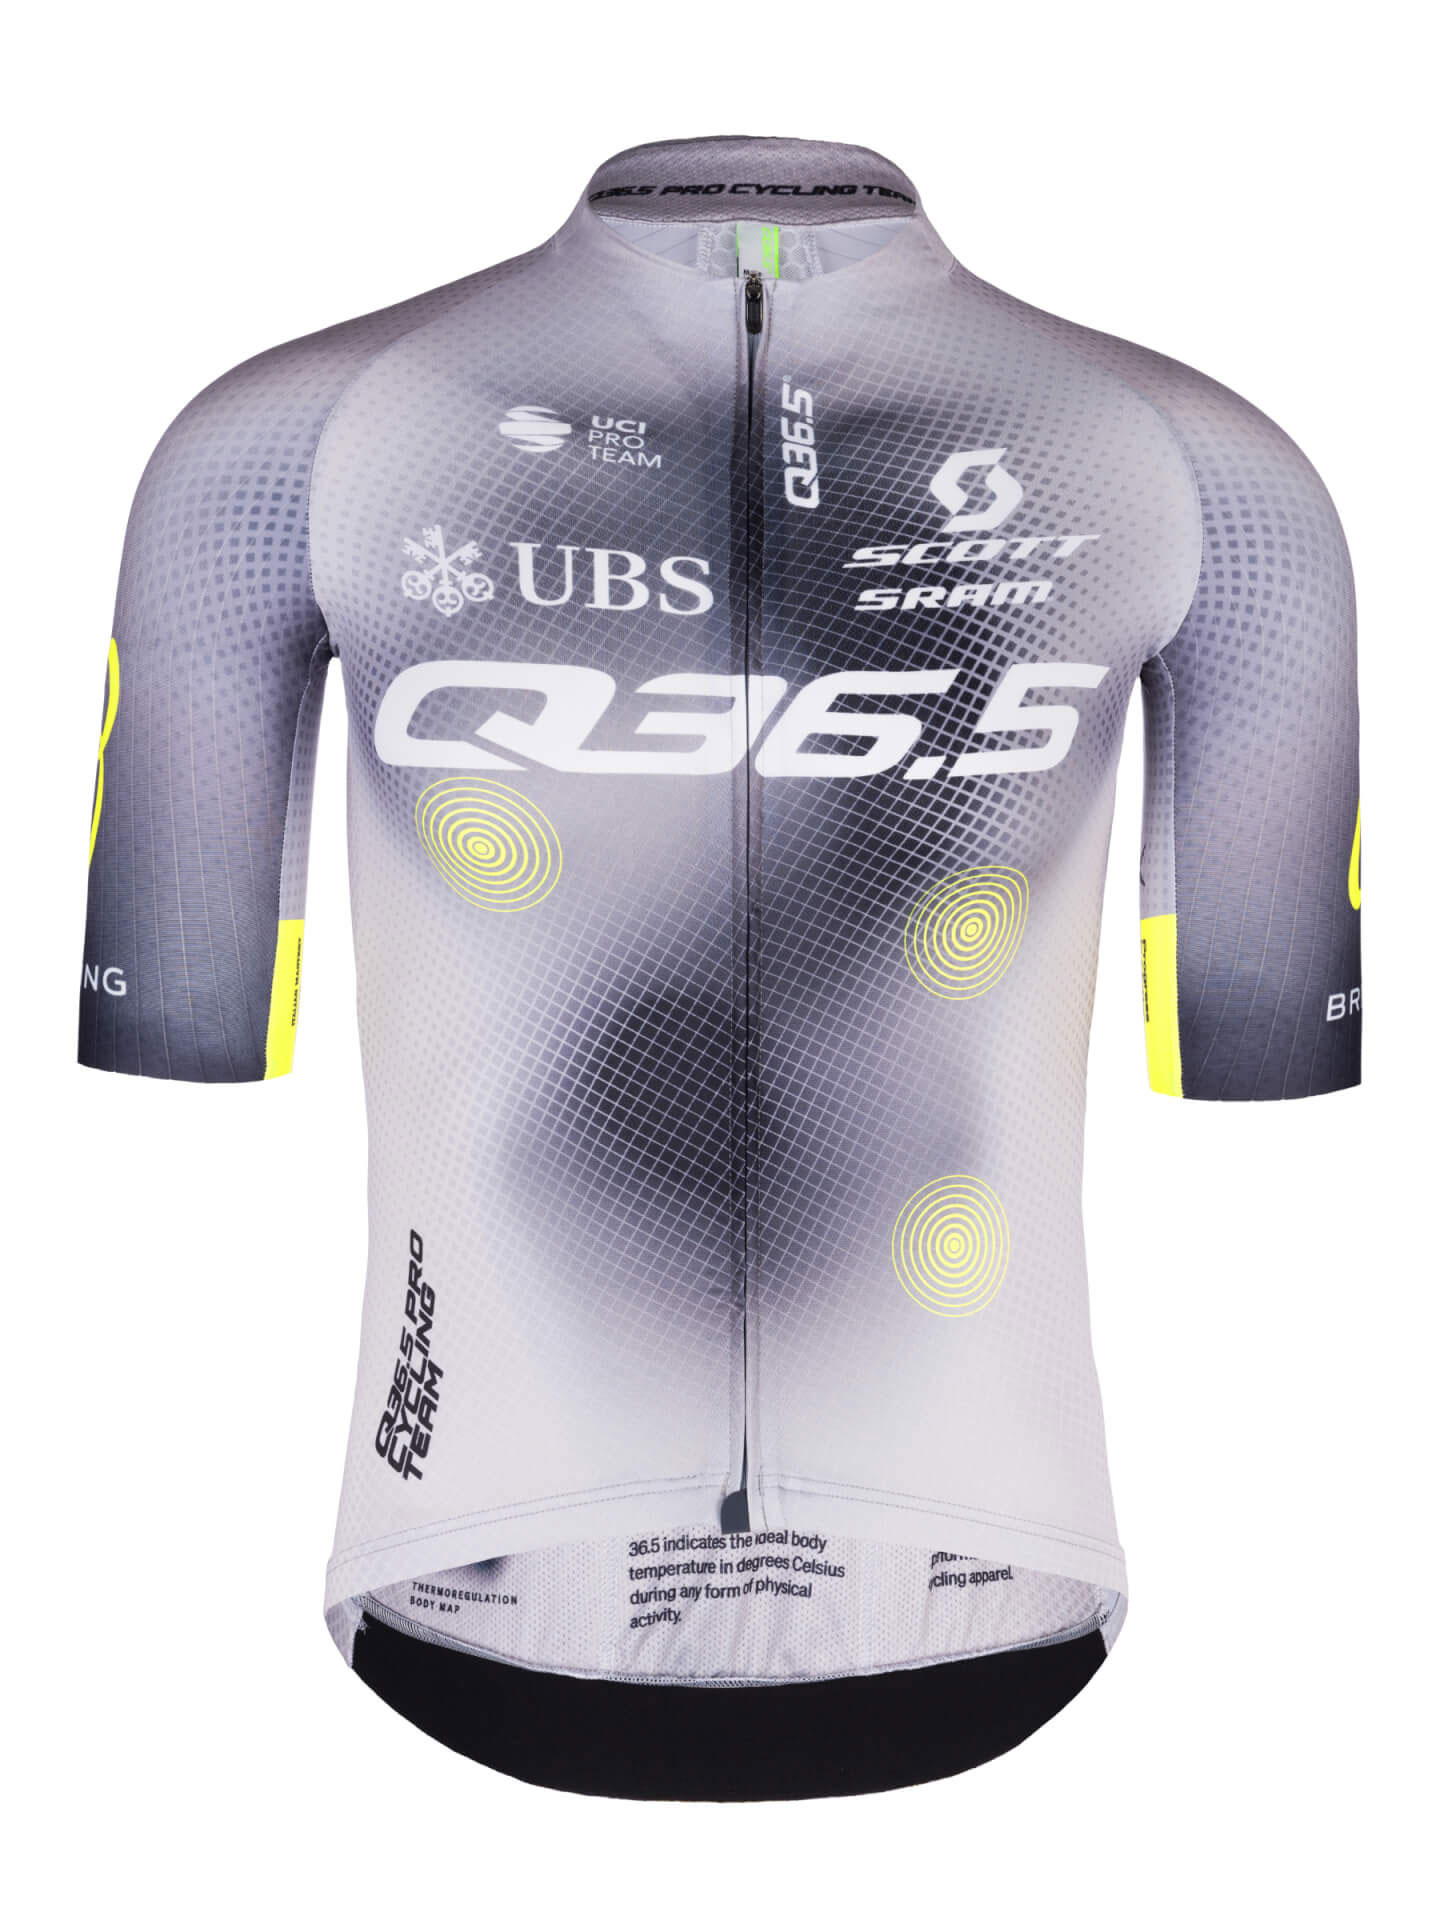 The Q36.5 Pro Cycling Team Kit 